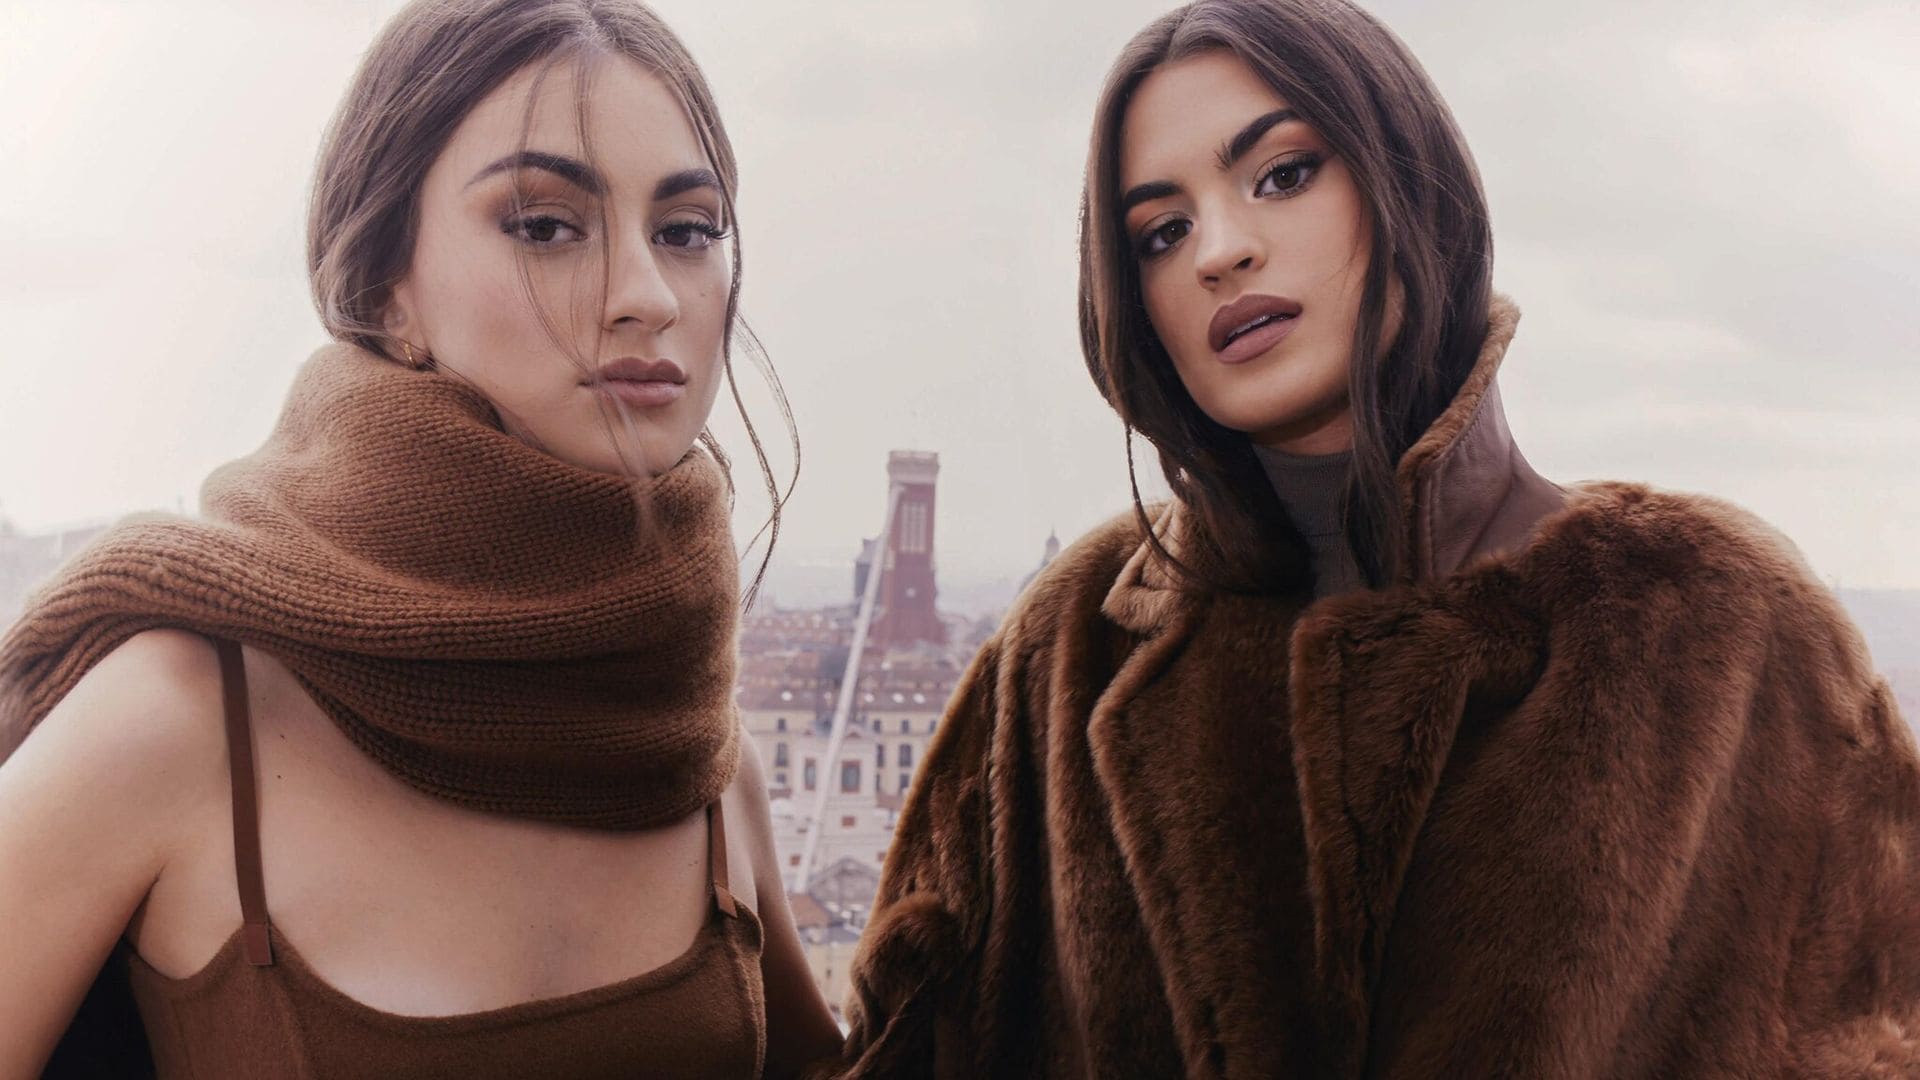 EN ¡HOLA!: Marta y Meri Lozano, dos hermanas imparables en la moda y en las redes